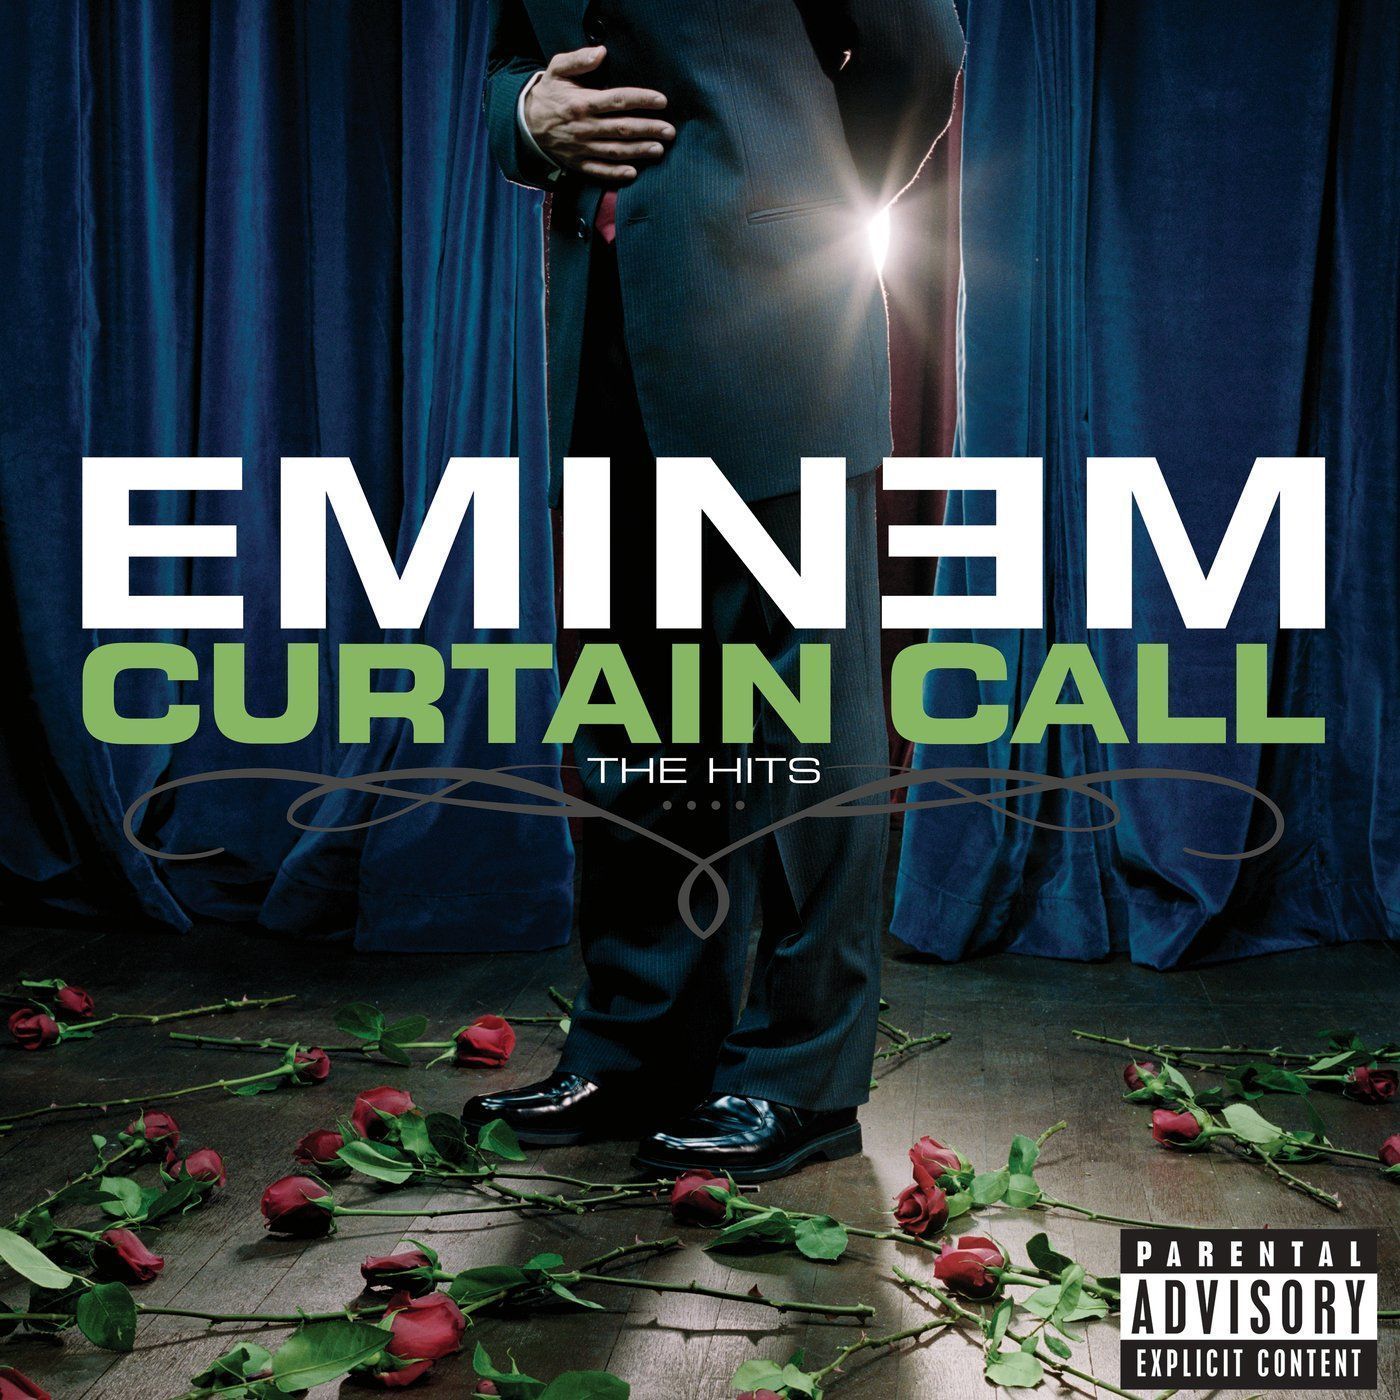 Eminem - When I'm Gone Lyrics 